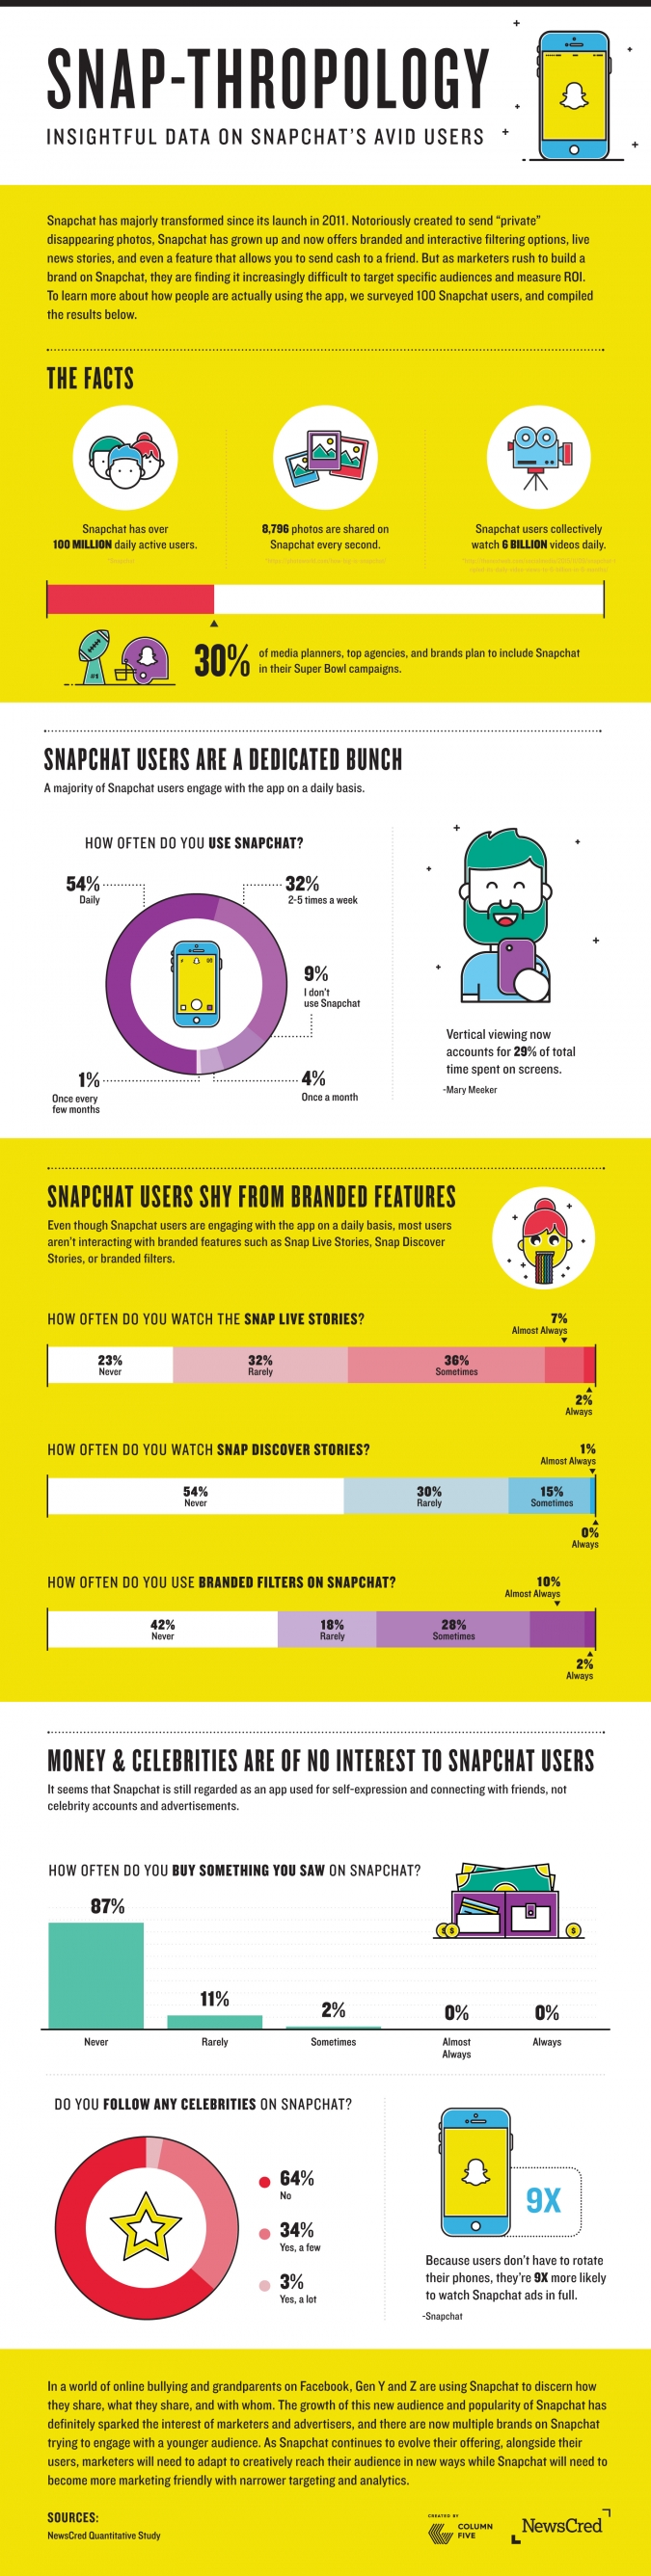 Snapchat Marketing für B2B- und B2C-Unternehmen – Infografik zu Nutzungsverhalten und Marketingpotential